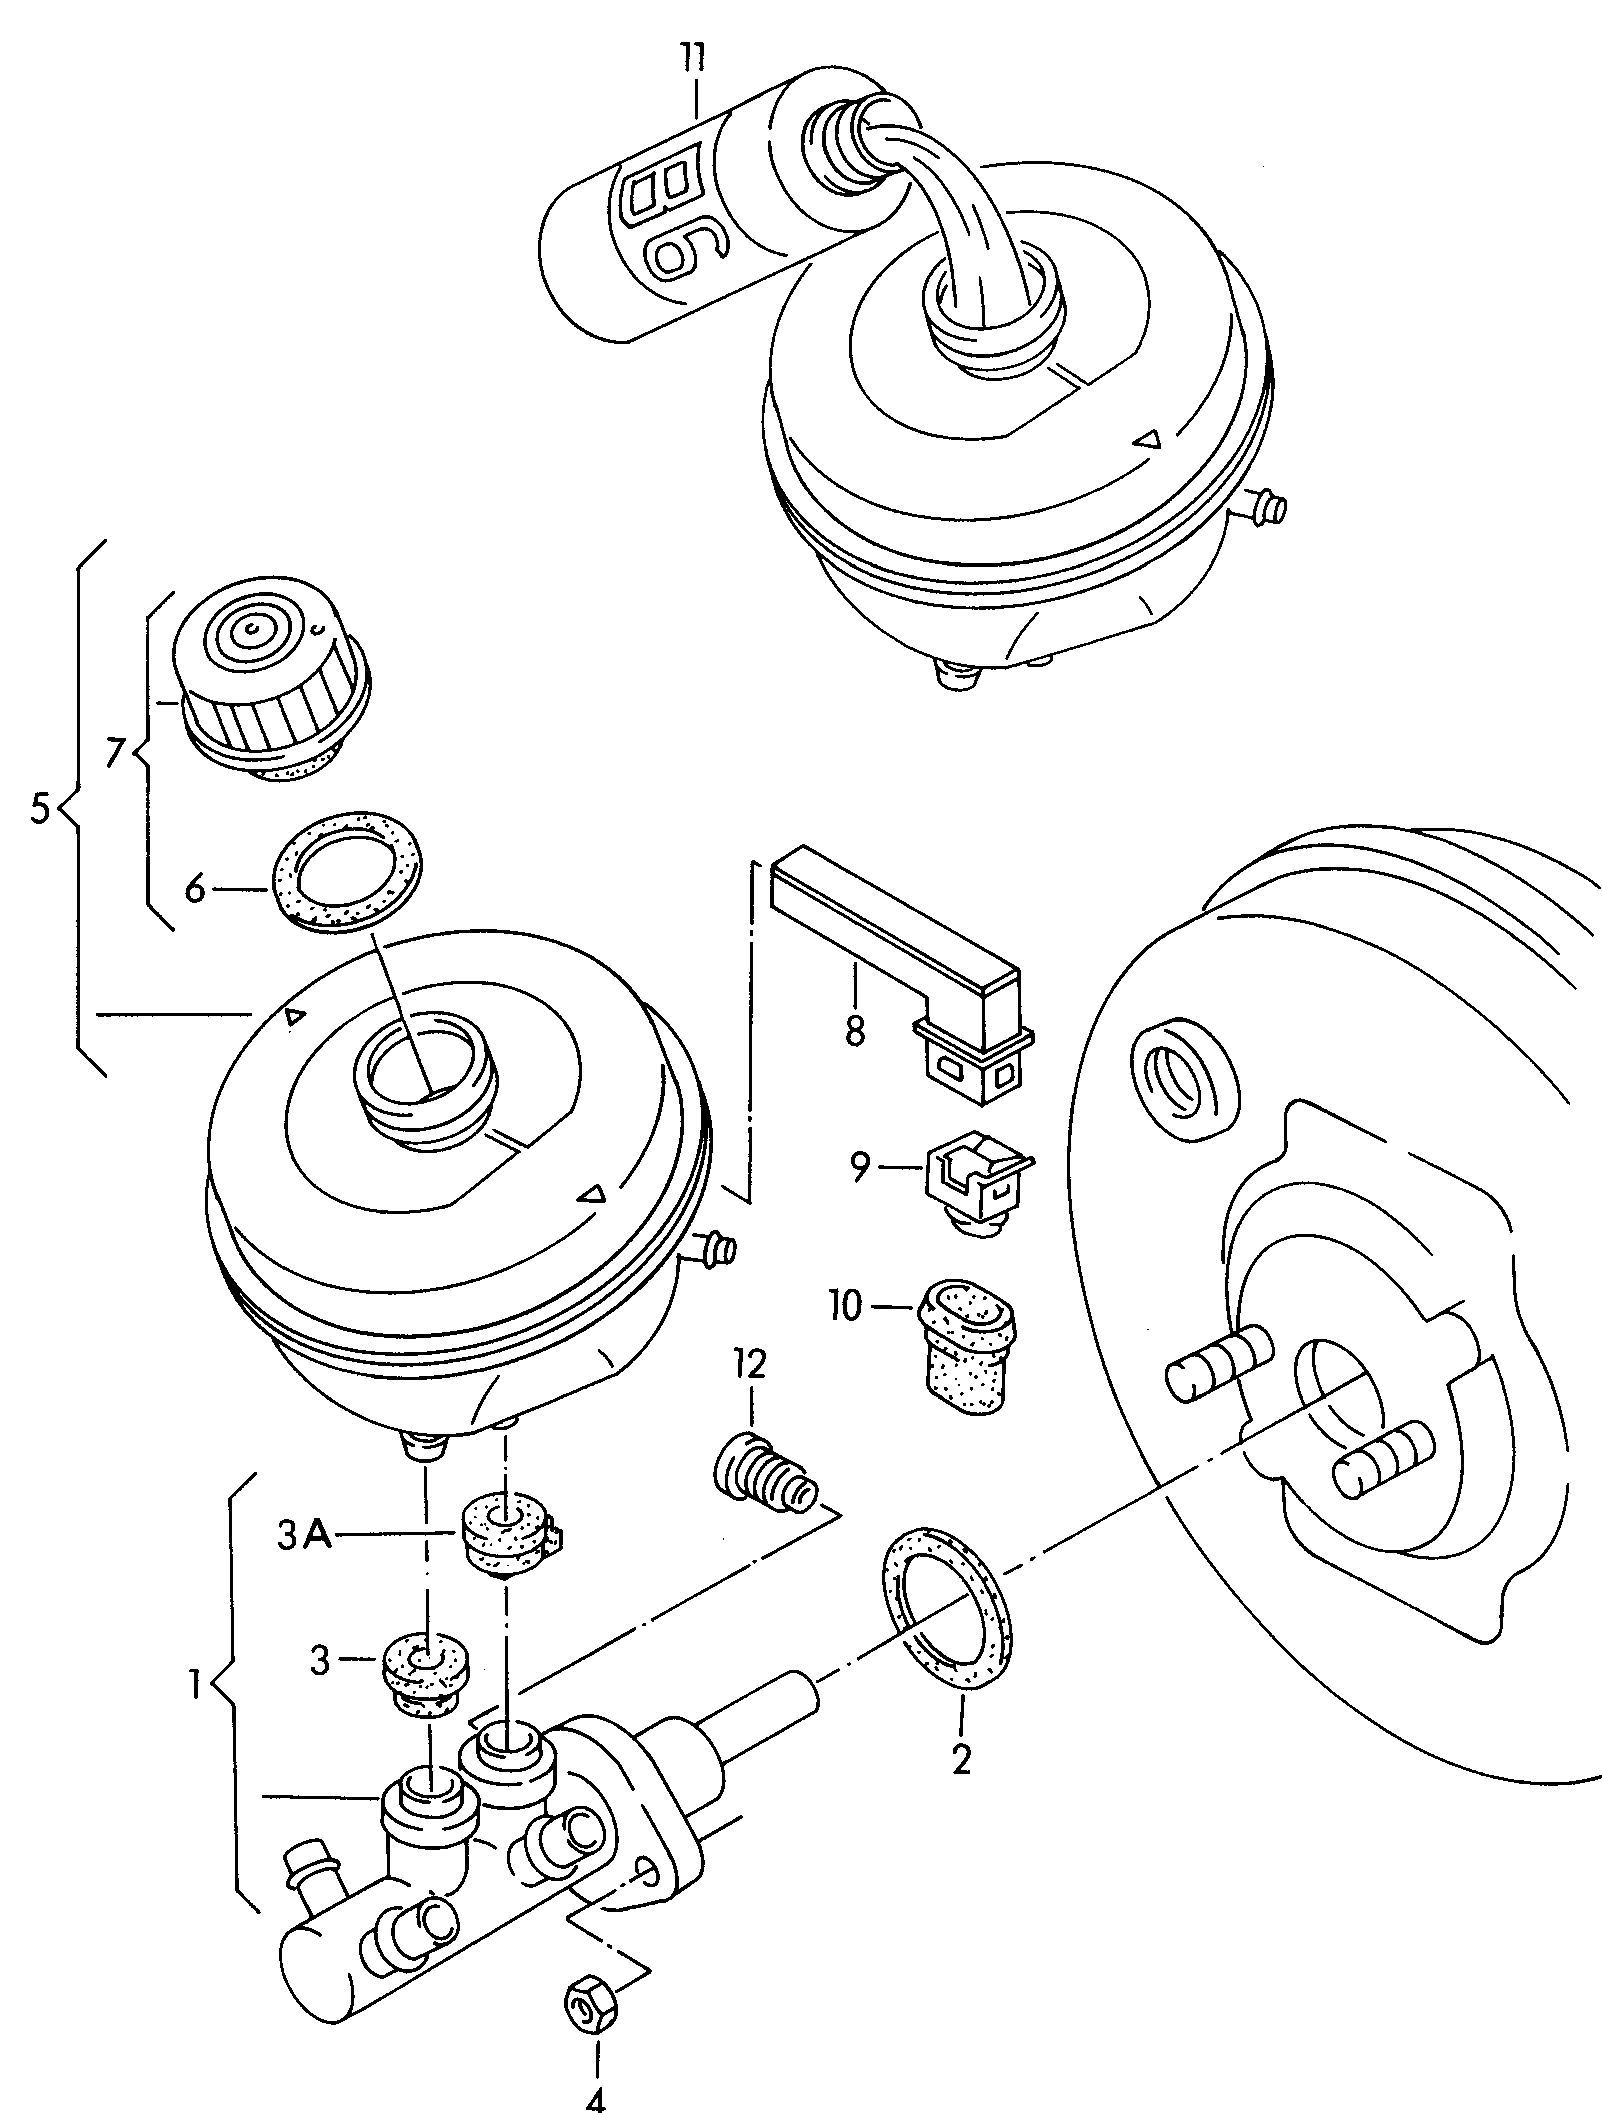 串联式制动主缸; 补偿罐 - Audi 80 Avant RS2 quattro(RS2)  